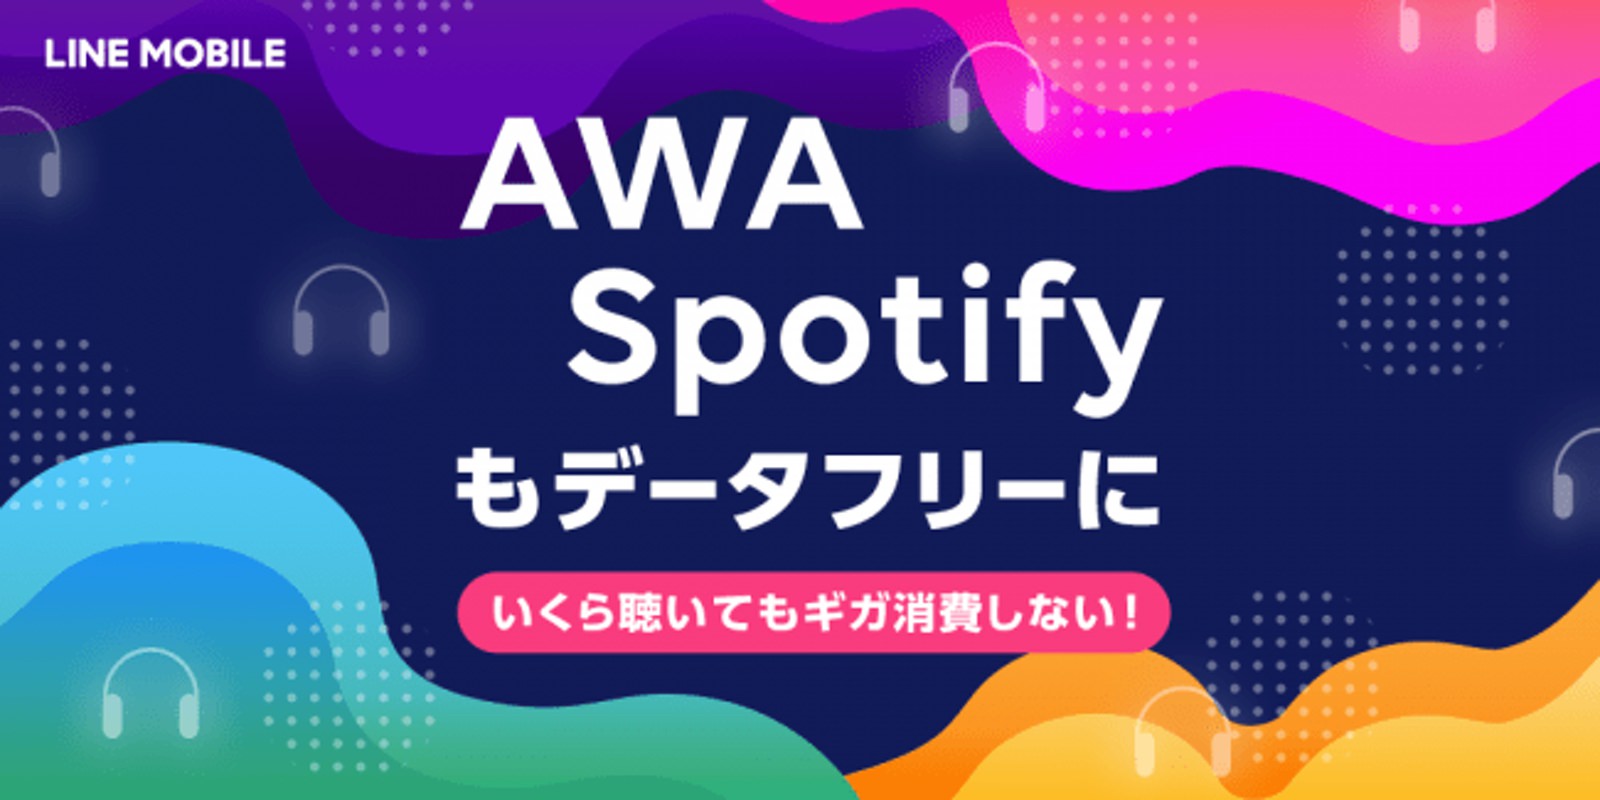 LINE-mobile-AWA-Spotify.jpg